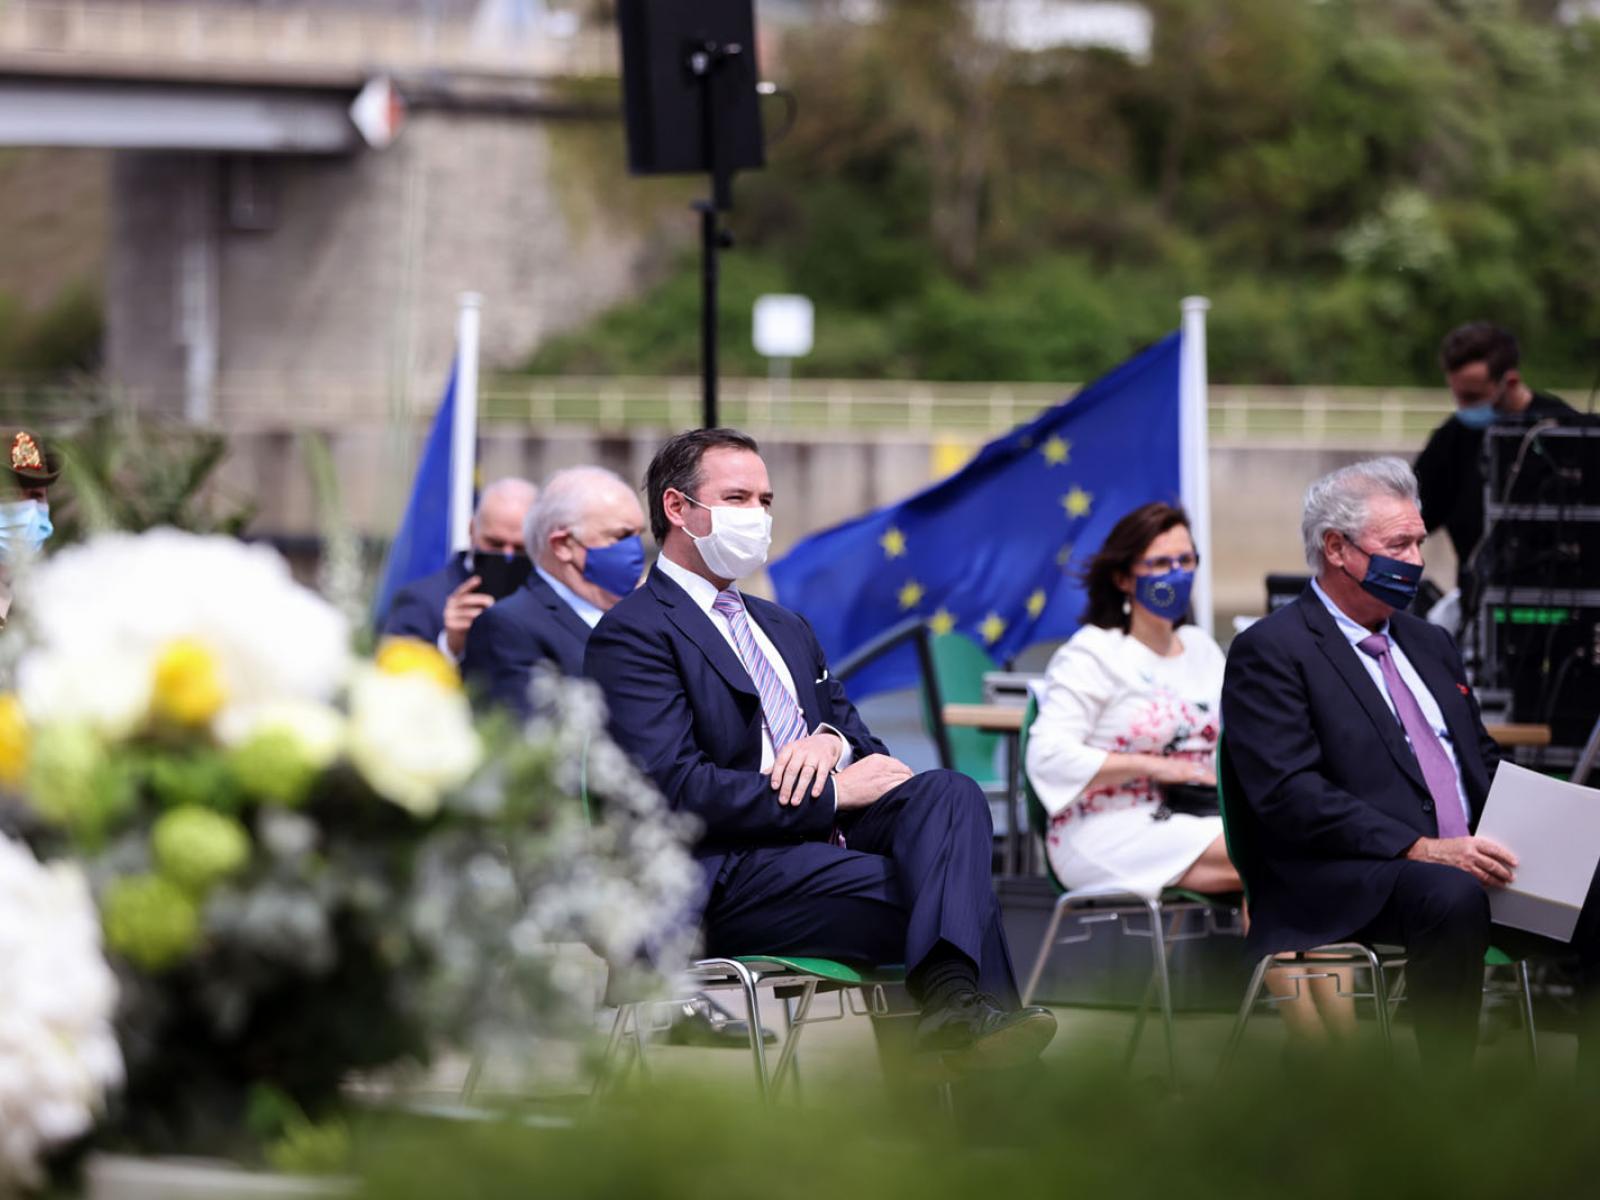 Le Prince Guillaume assiste à la commémoration de la journée de l'Europe à Schengen